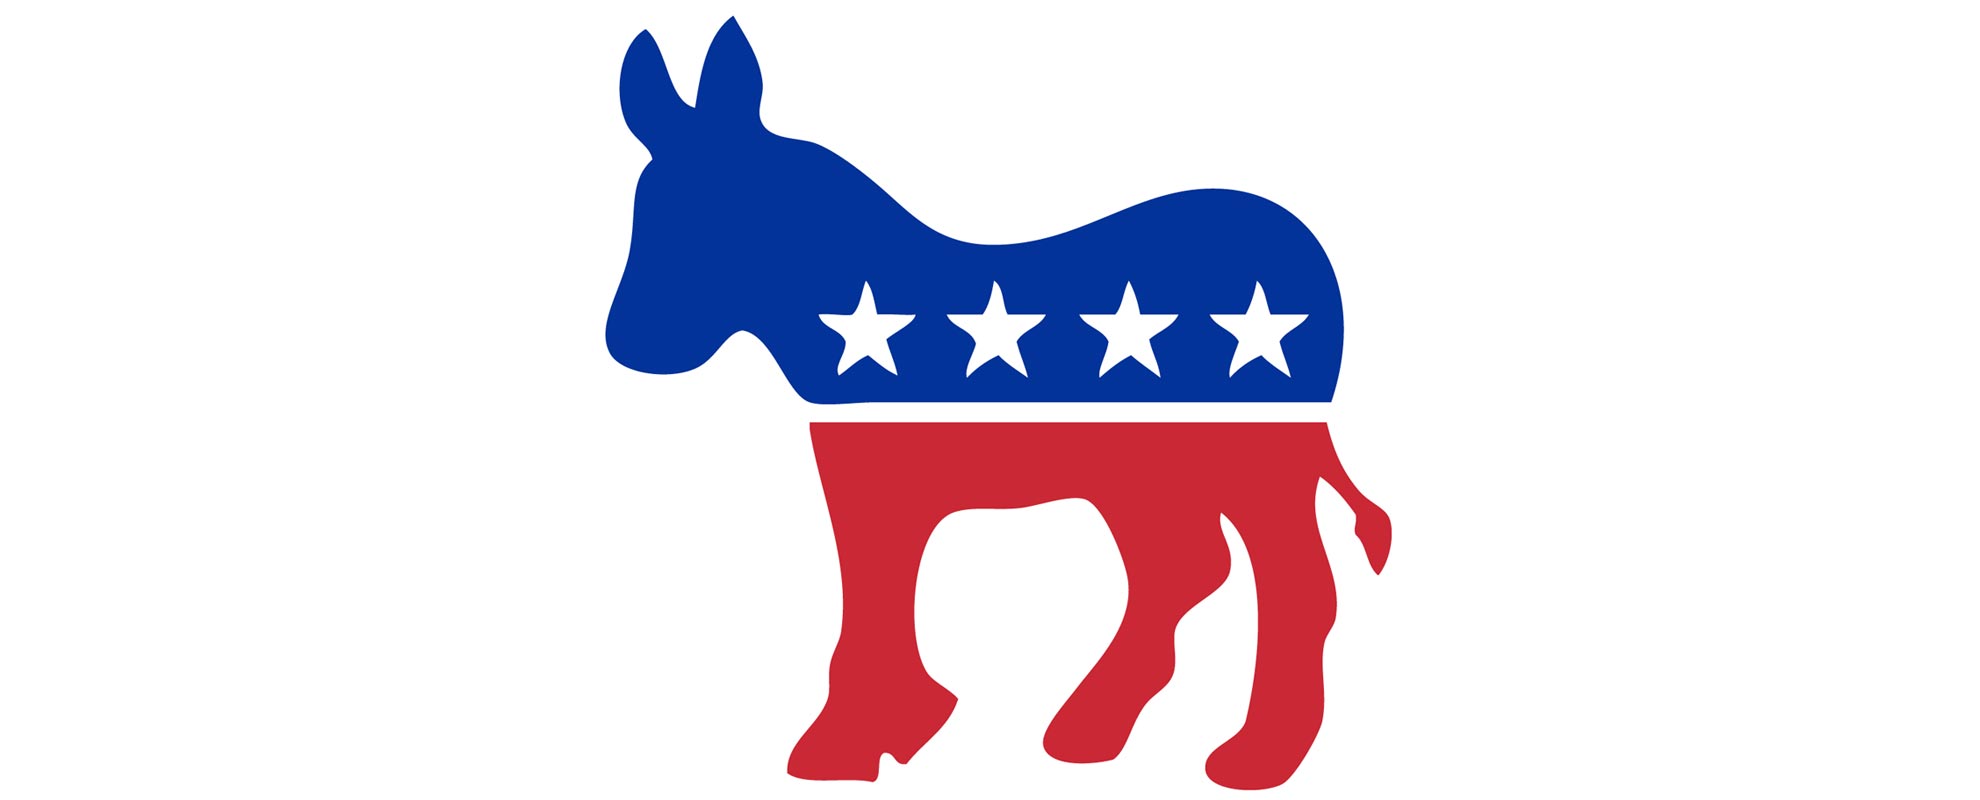 democrat-donkey1.jpg?w=1200